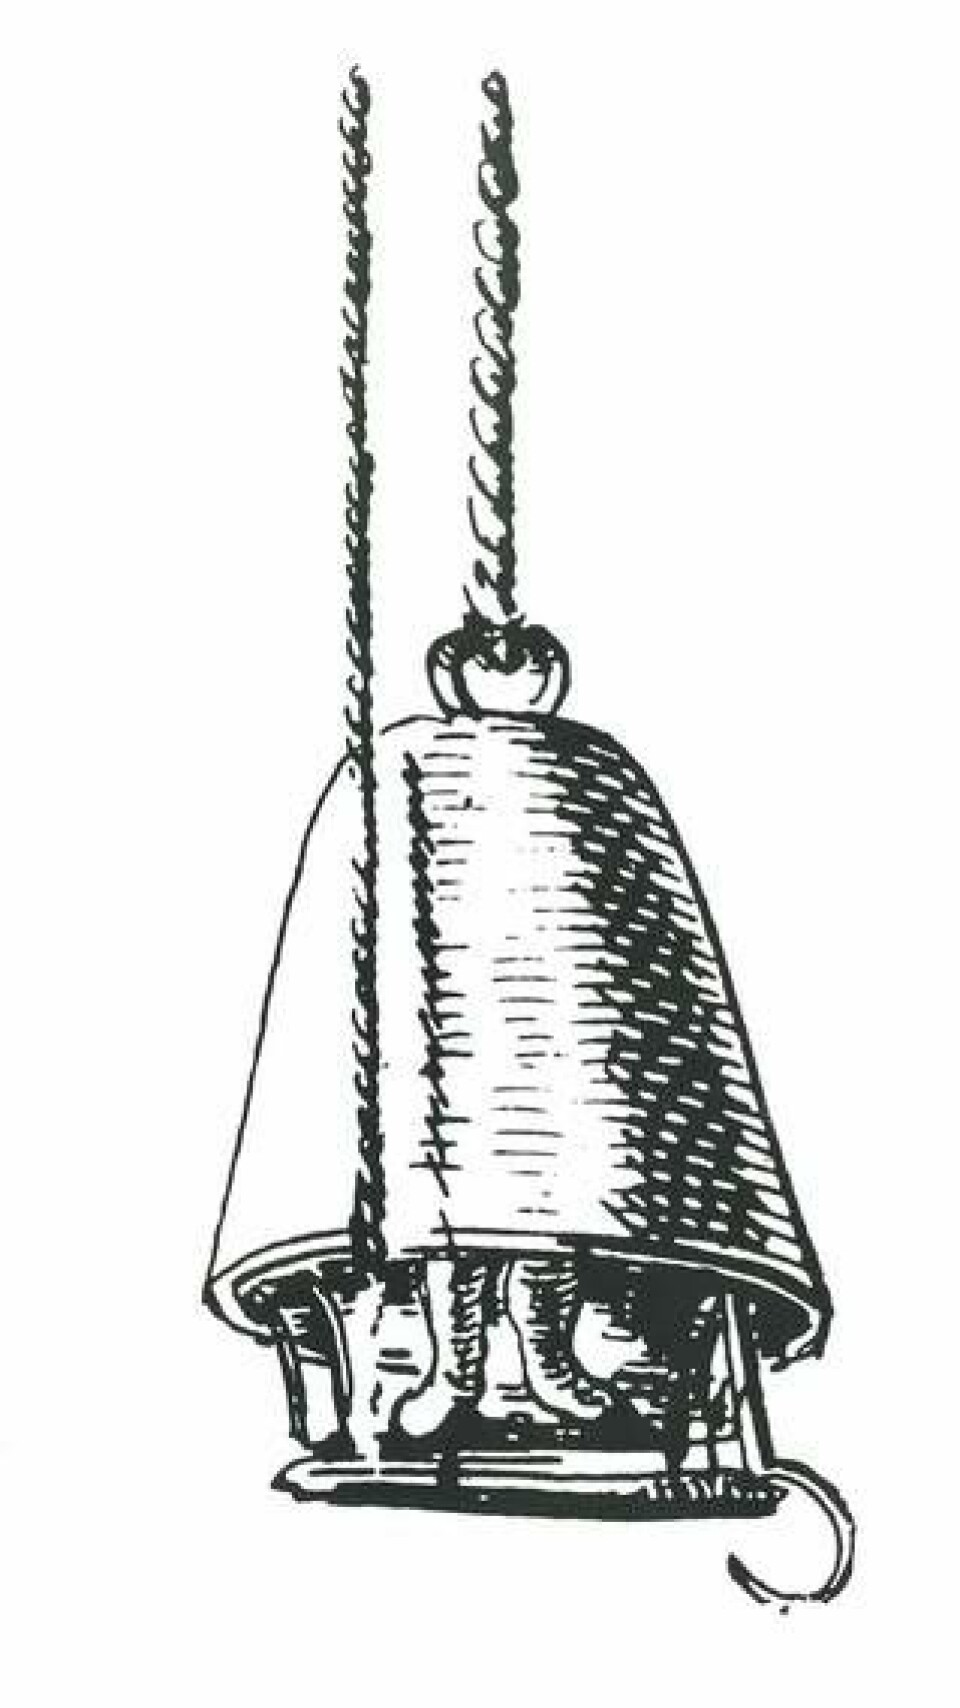 Flera misslyckade bärgningsförsök utfördes efter förlisningen den 10 augusti 1628. De flesta av Vasas kanoner bärgas fram till år 1665, efter introduktionen av en ny uppfinning: dykarklockan. Teckningen av en 1600-talsdykarklocka är gjord av italienaren Francesco Negri på 1660-talet, efter ett besök i Stockholm då han såg bärgningen av Vasas kanoner som pågick. Foto: FRANCESCO NEGRI